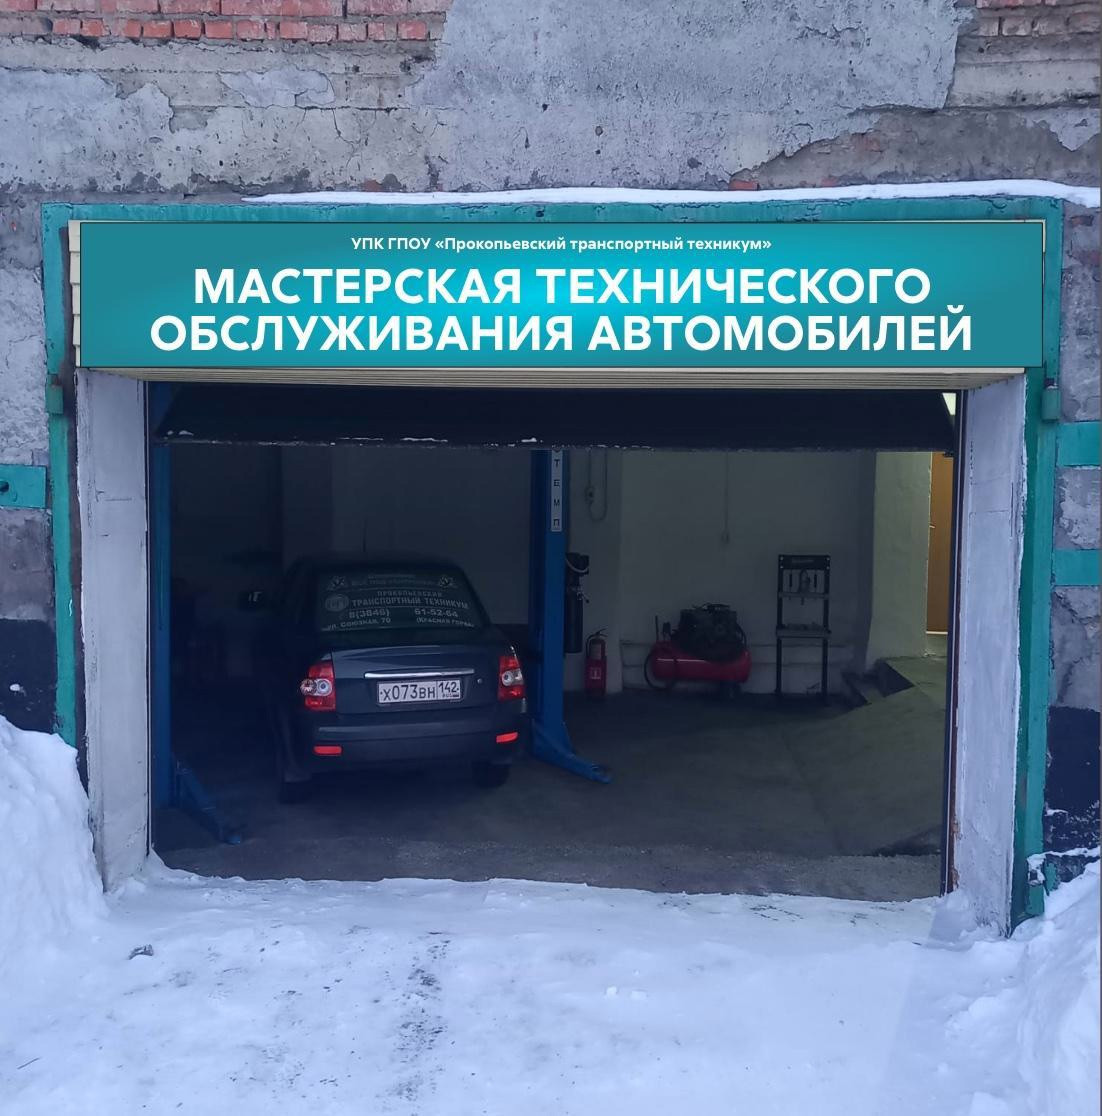 На базе прокопьевского транспортного техникума начнёт работу станция техобслуживания автомобилей